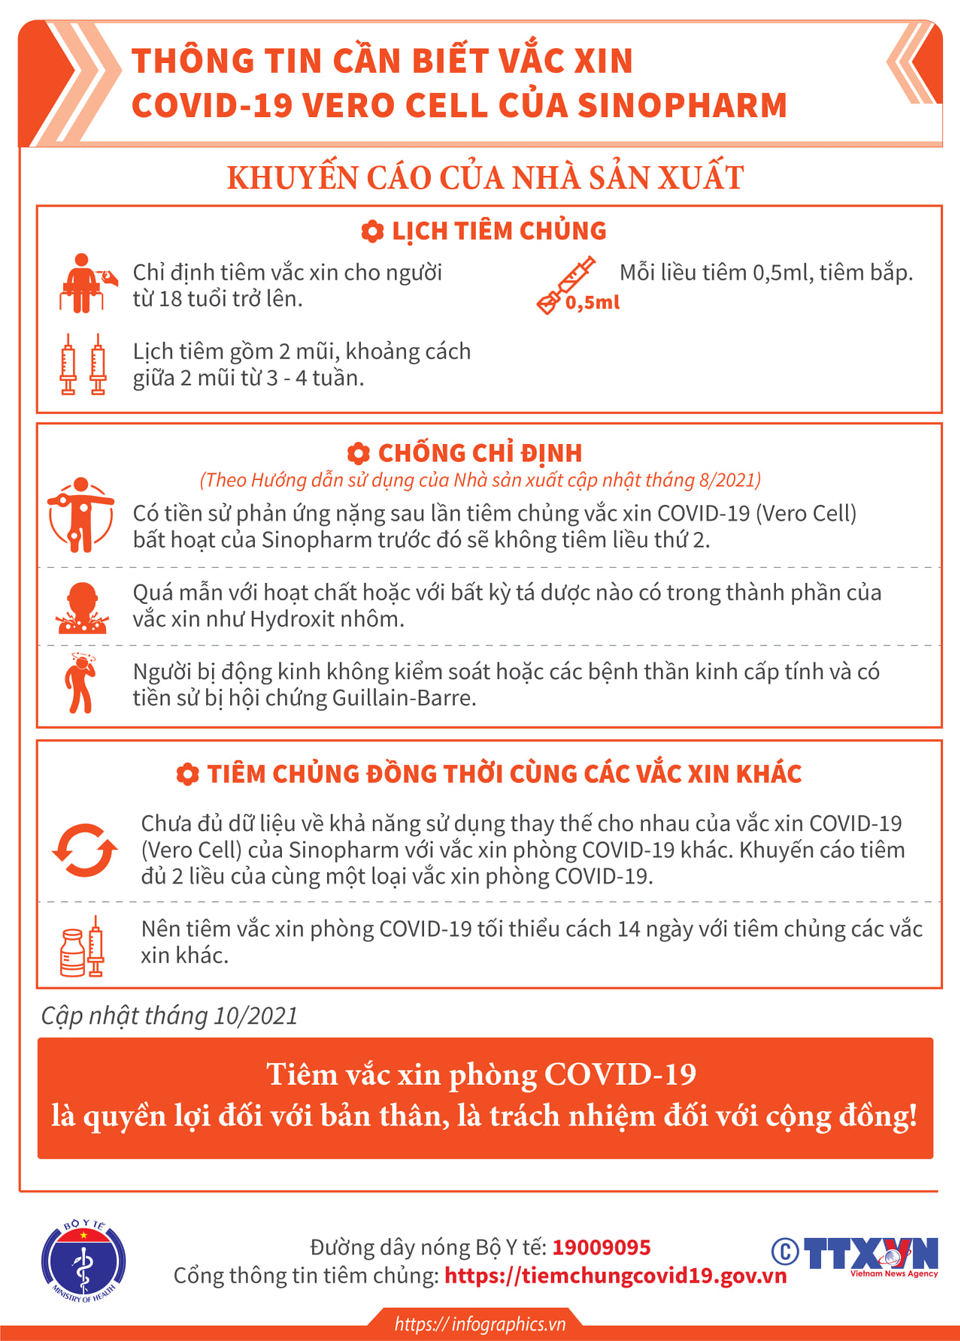 [Infographic] Thông tin cần biết về 3 loại vaccine  phòng Covid-19 - Ảnh 5